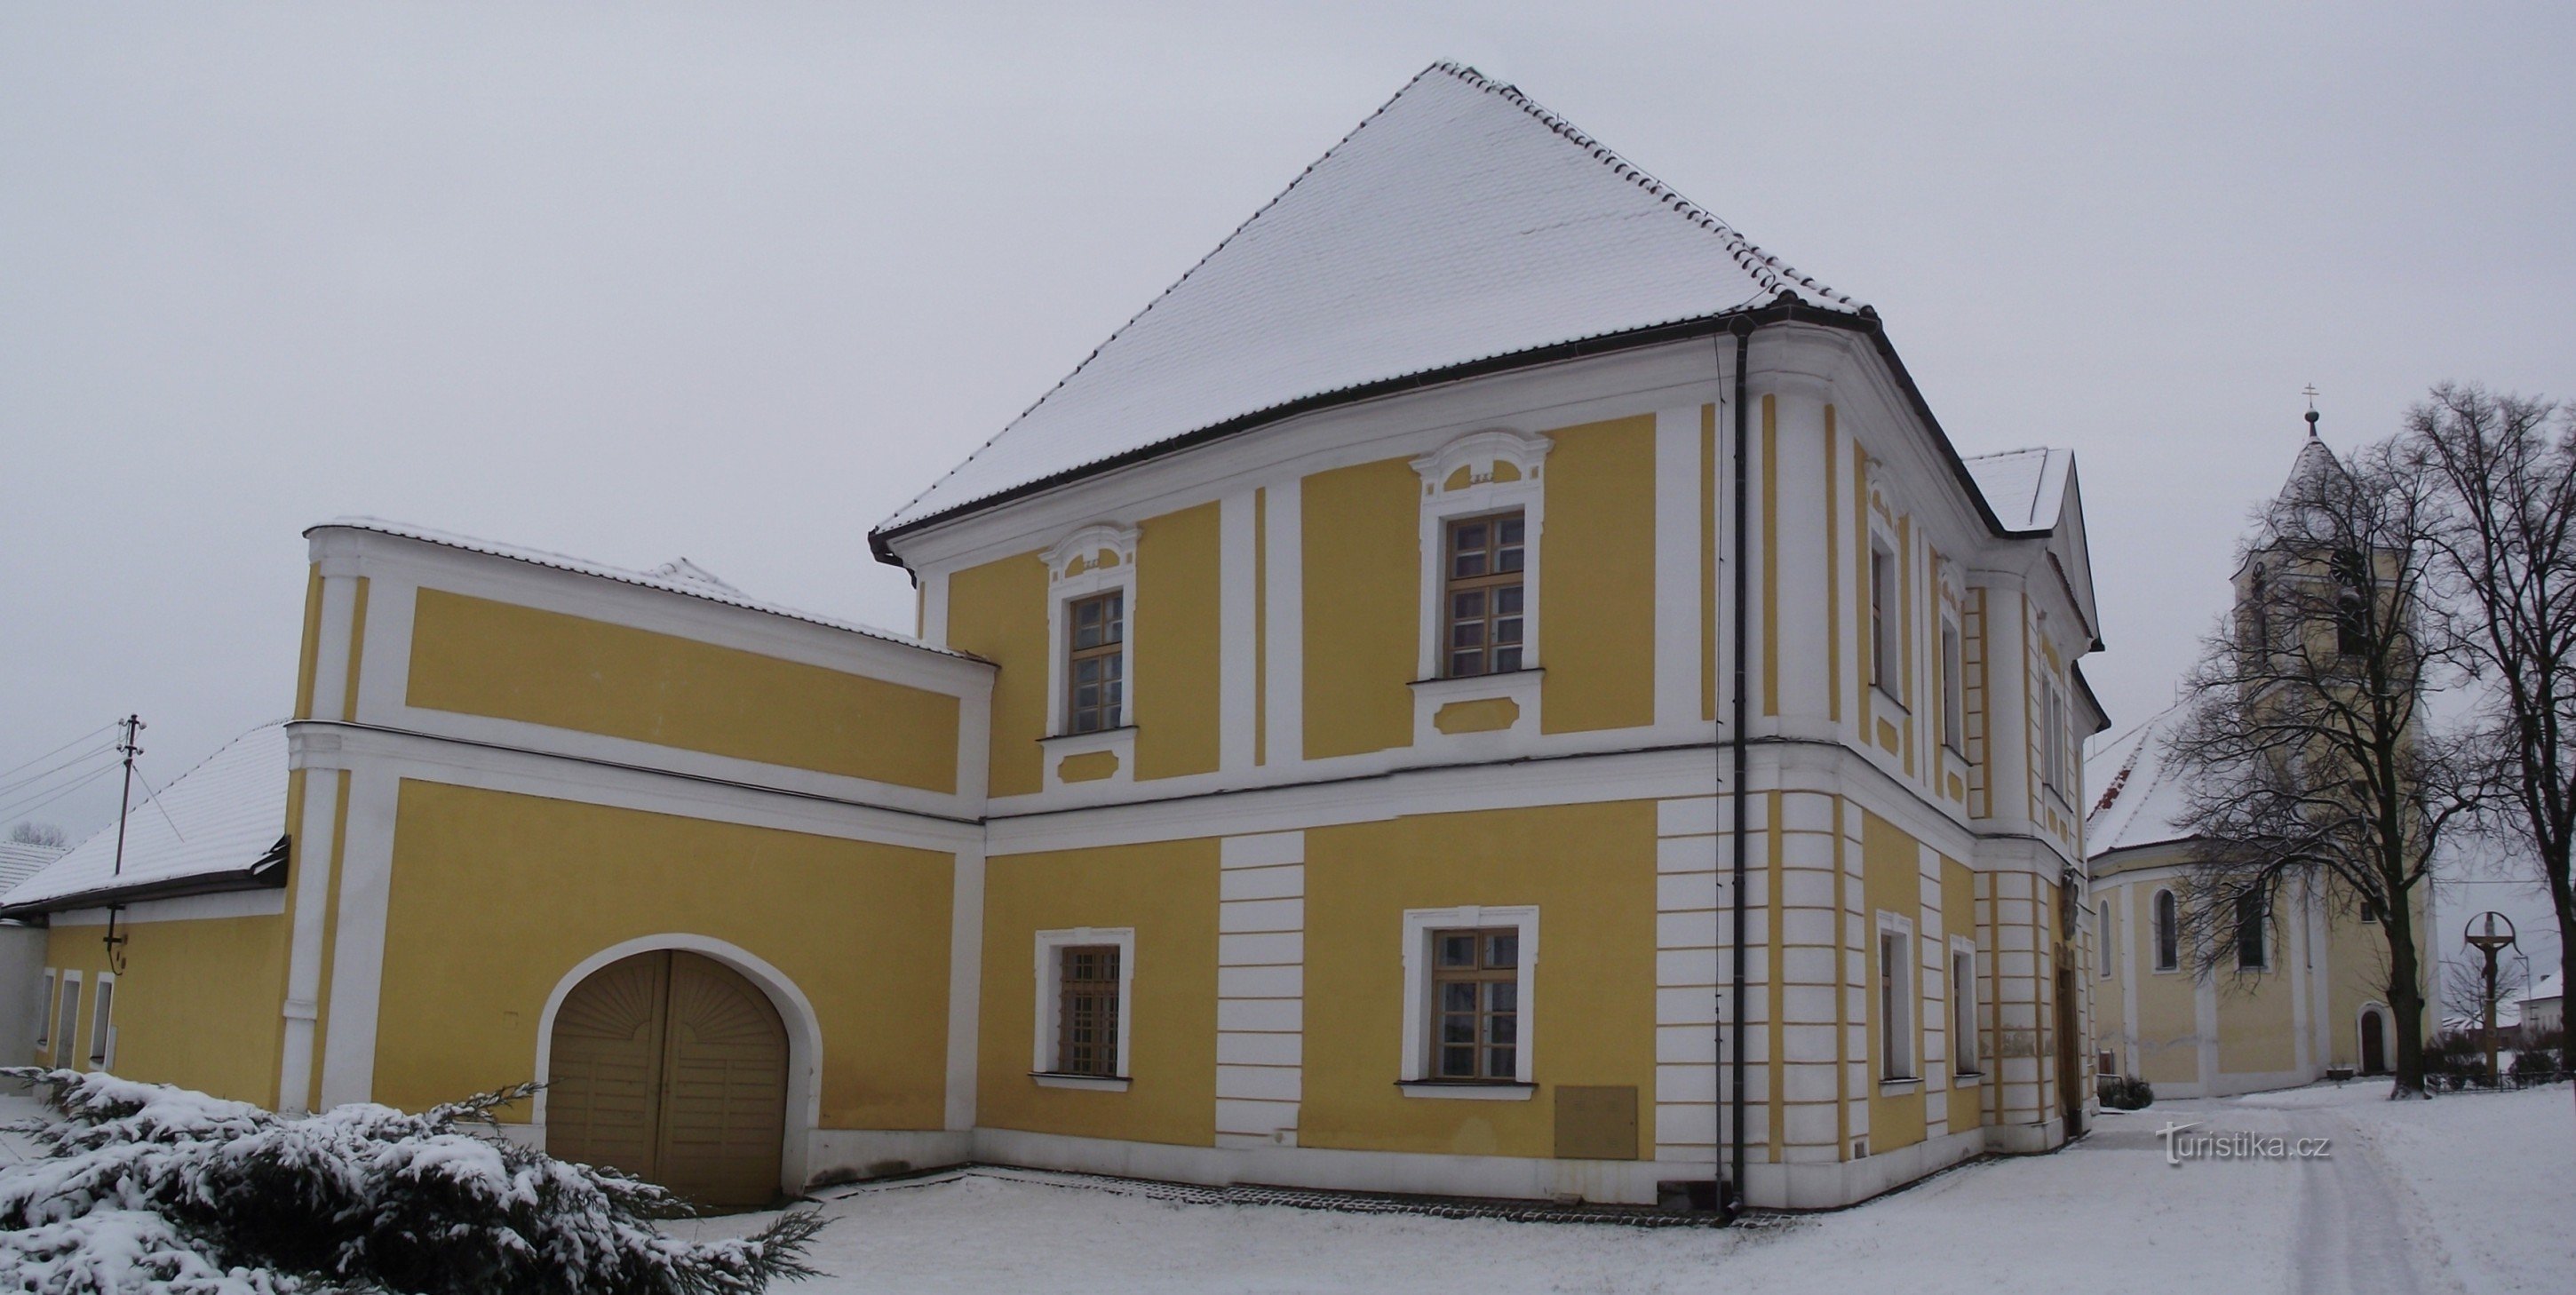 Cetkovice – ein Pfarrhaus, das Schloss genannt wird (oder ein Barockschloss, das als Pfarrhaus dient?)